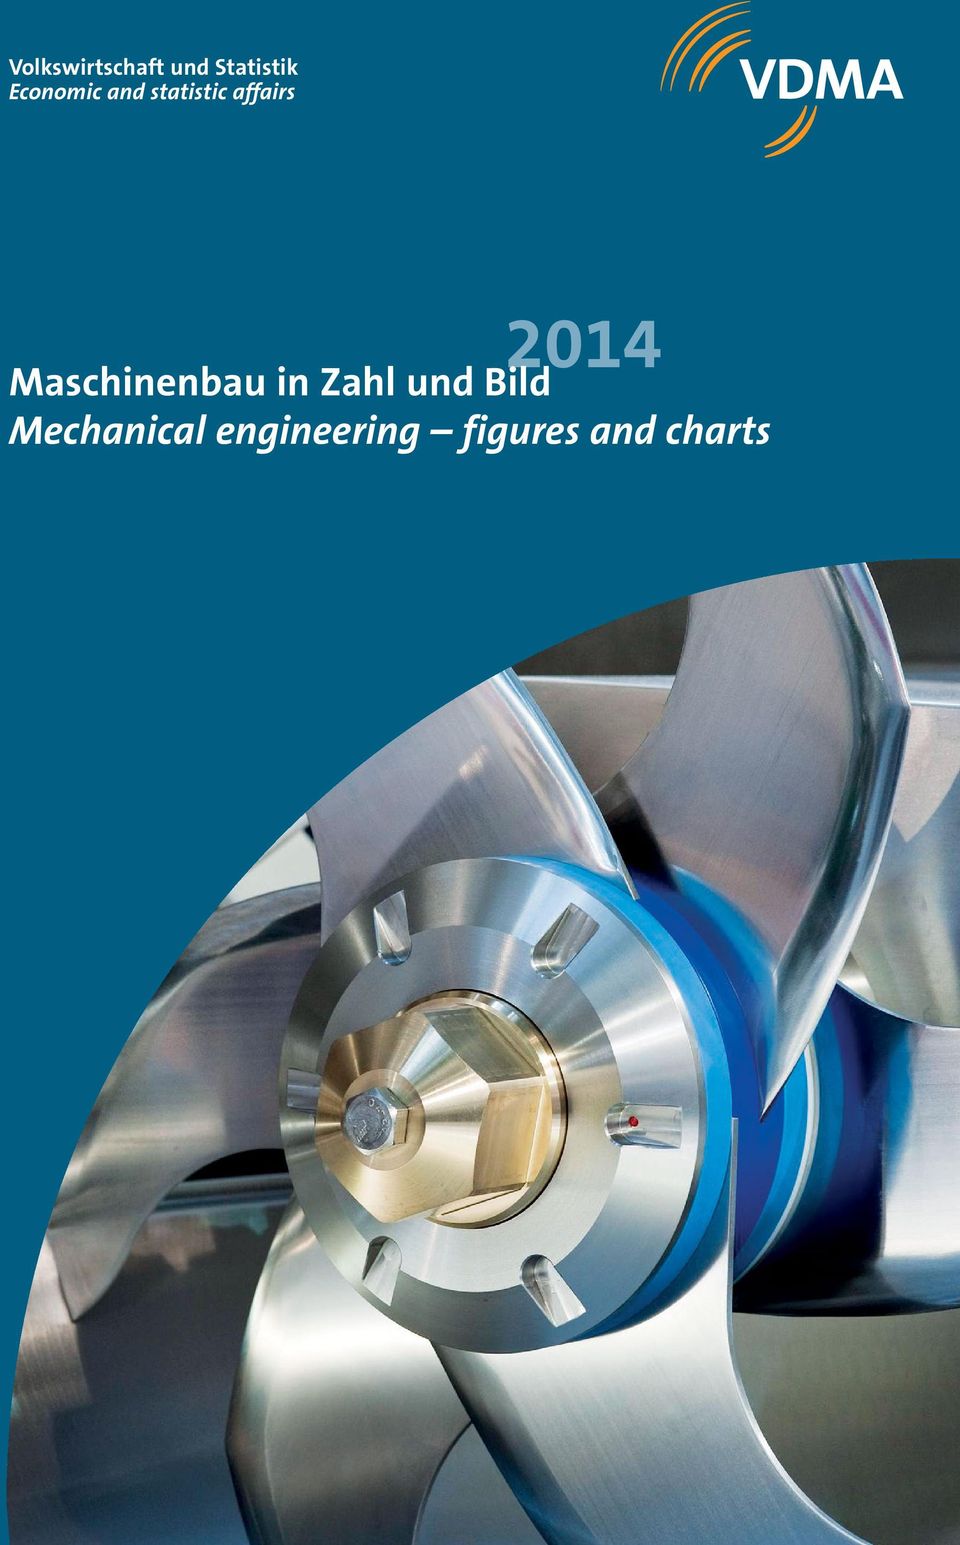 2014 Maschinenbau in Zahl und Bild